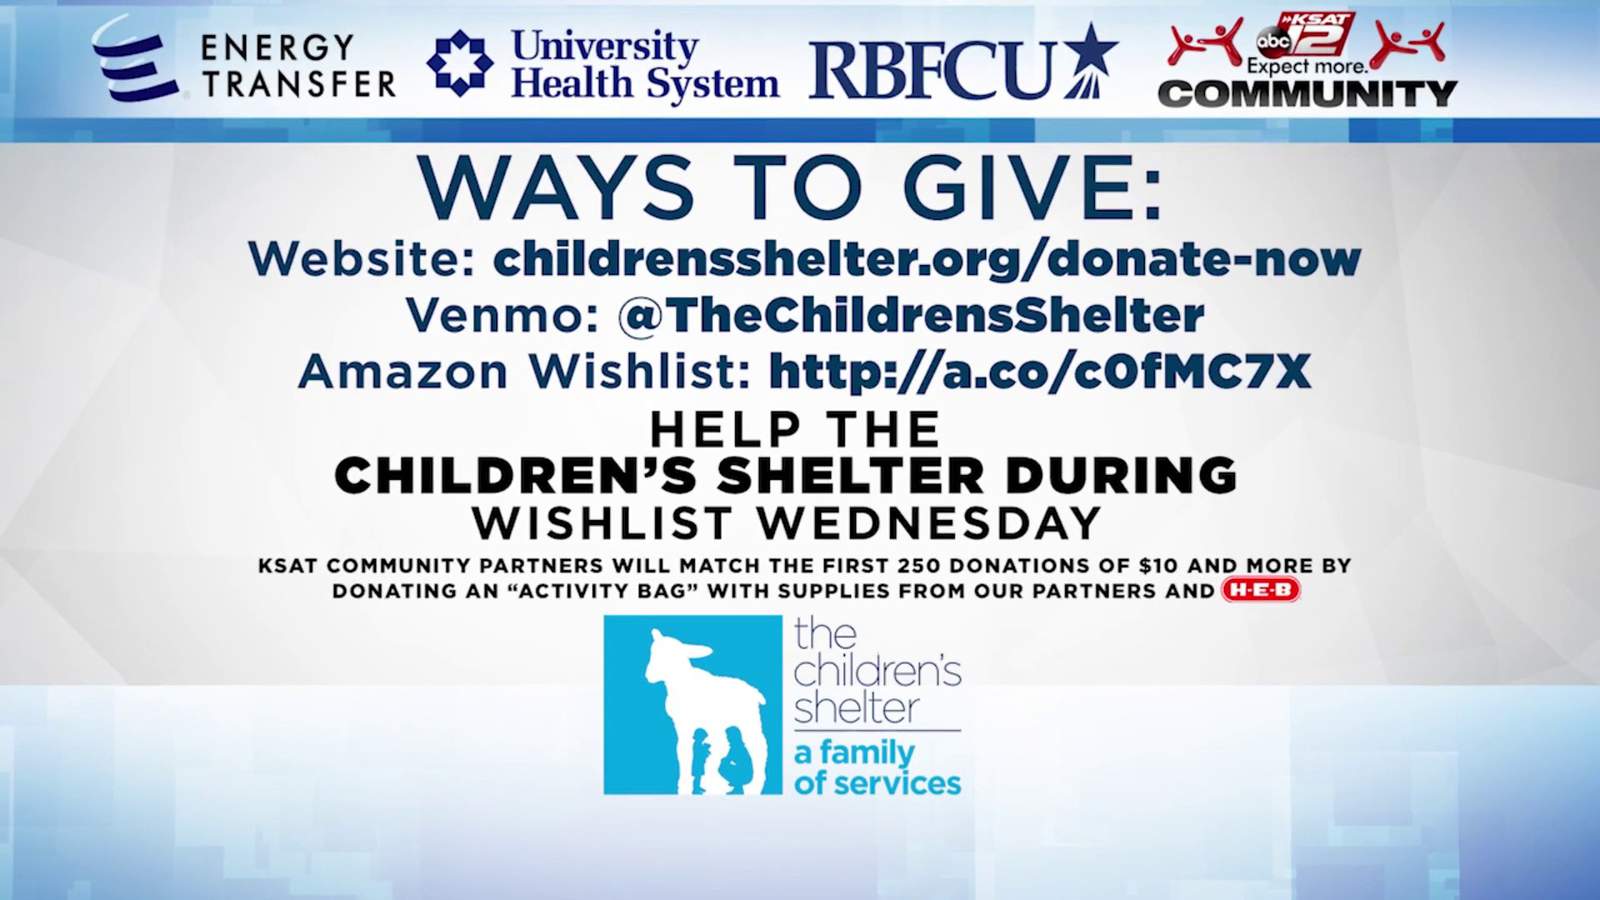 KSAT Community hosts Wishlist Wednesday to benefit The Children’s Shelter